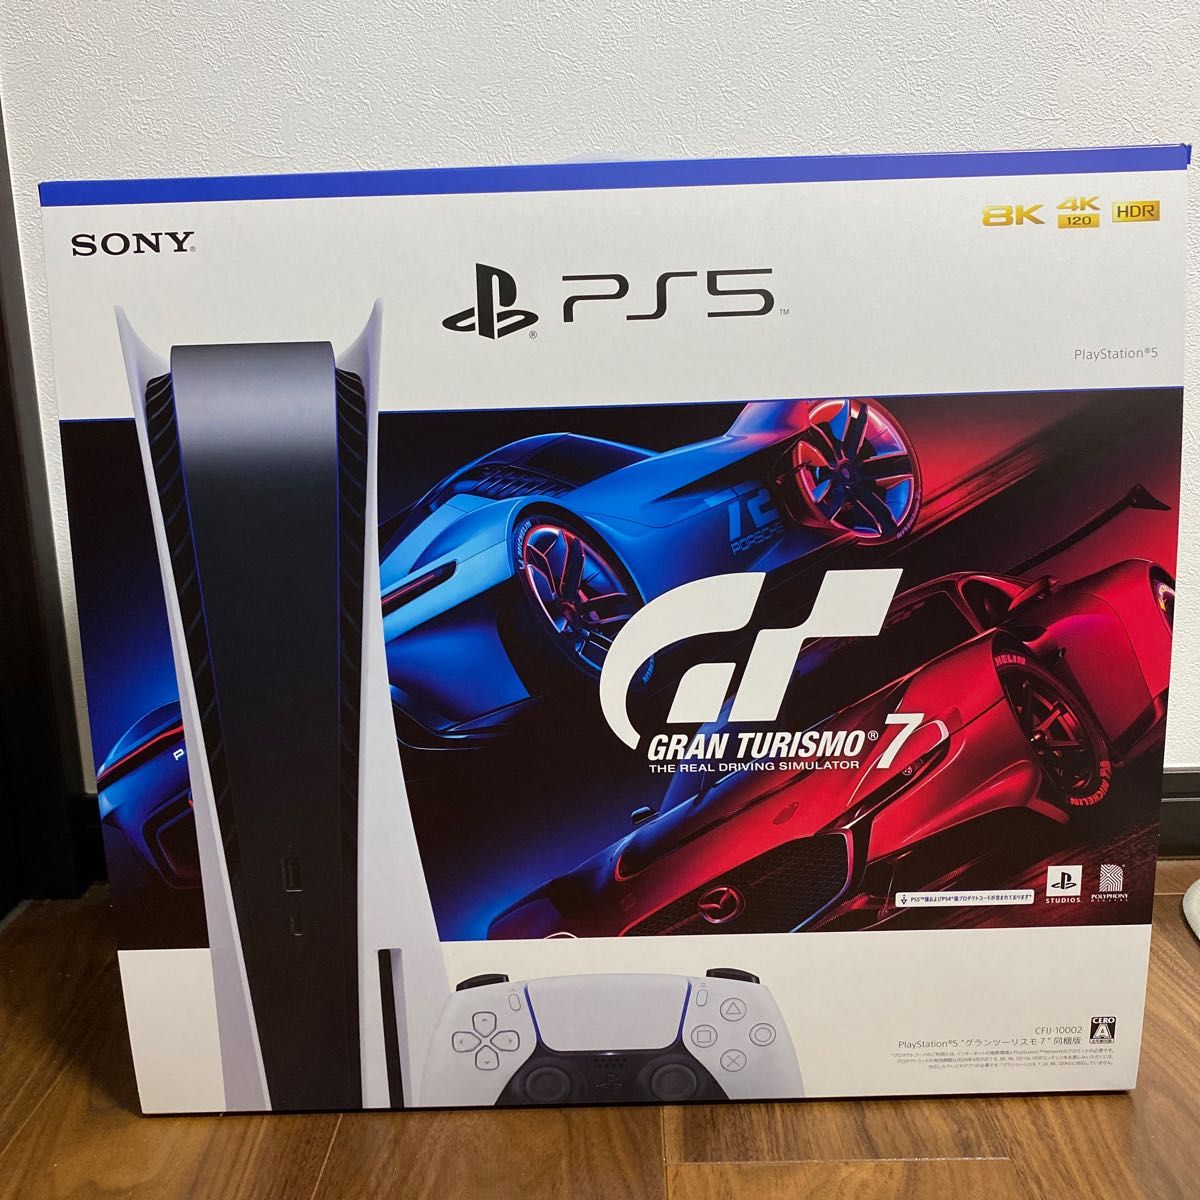 ゲオ延長保証付PlayStation 5 “グランツーリスモ7” 同梱版 テレビ